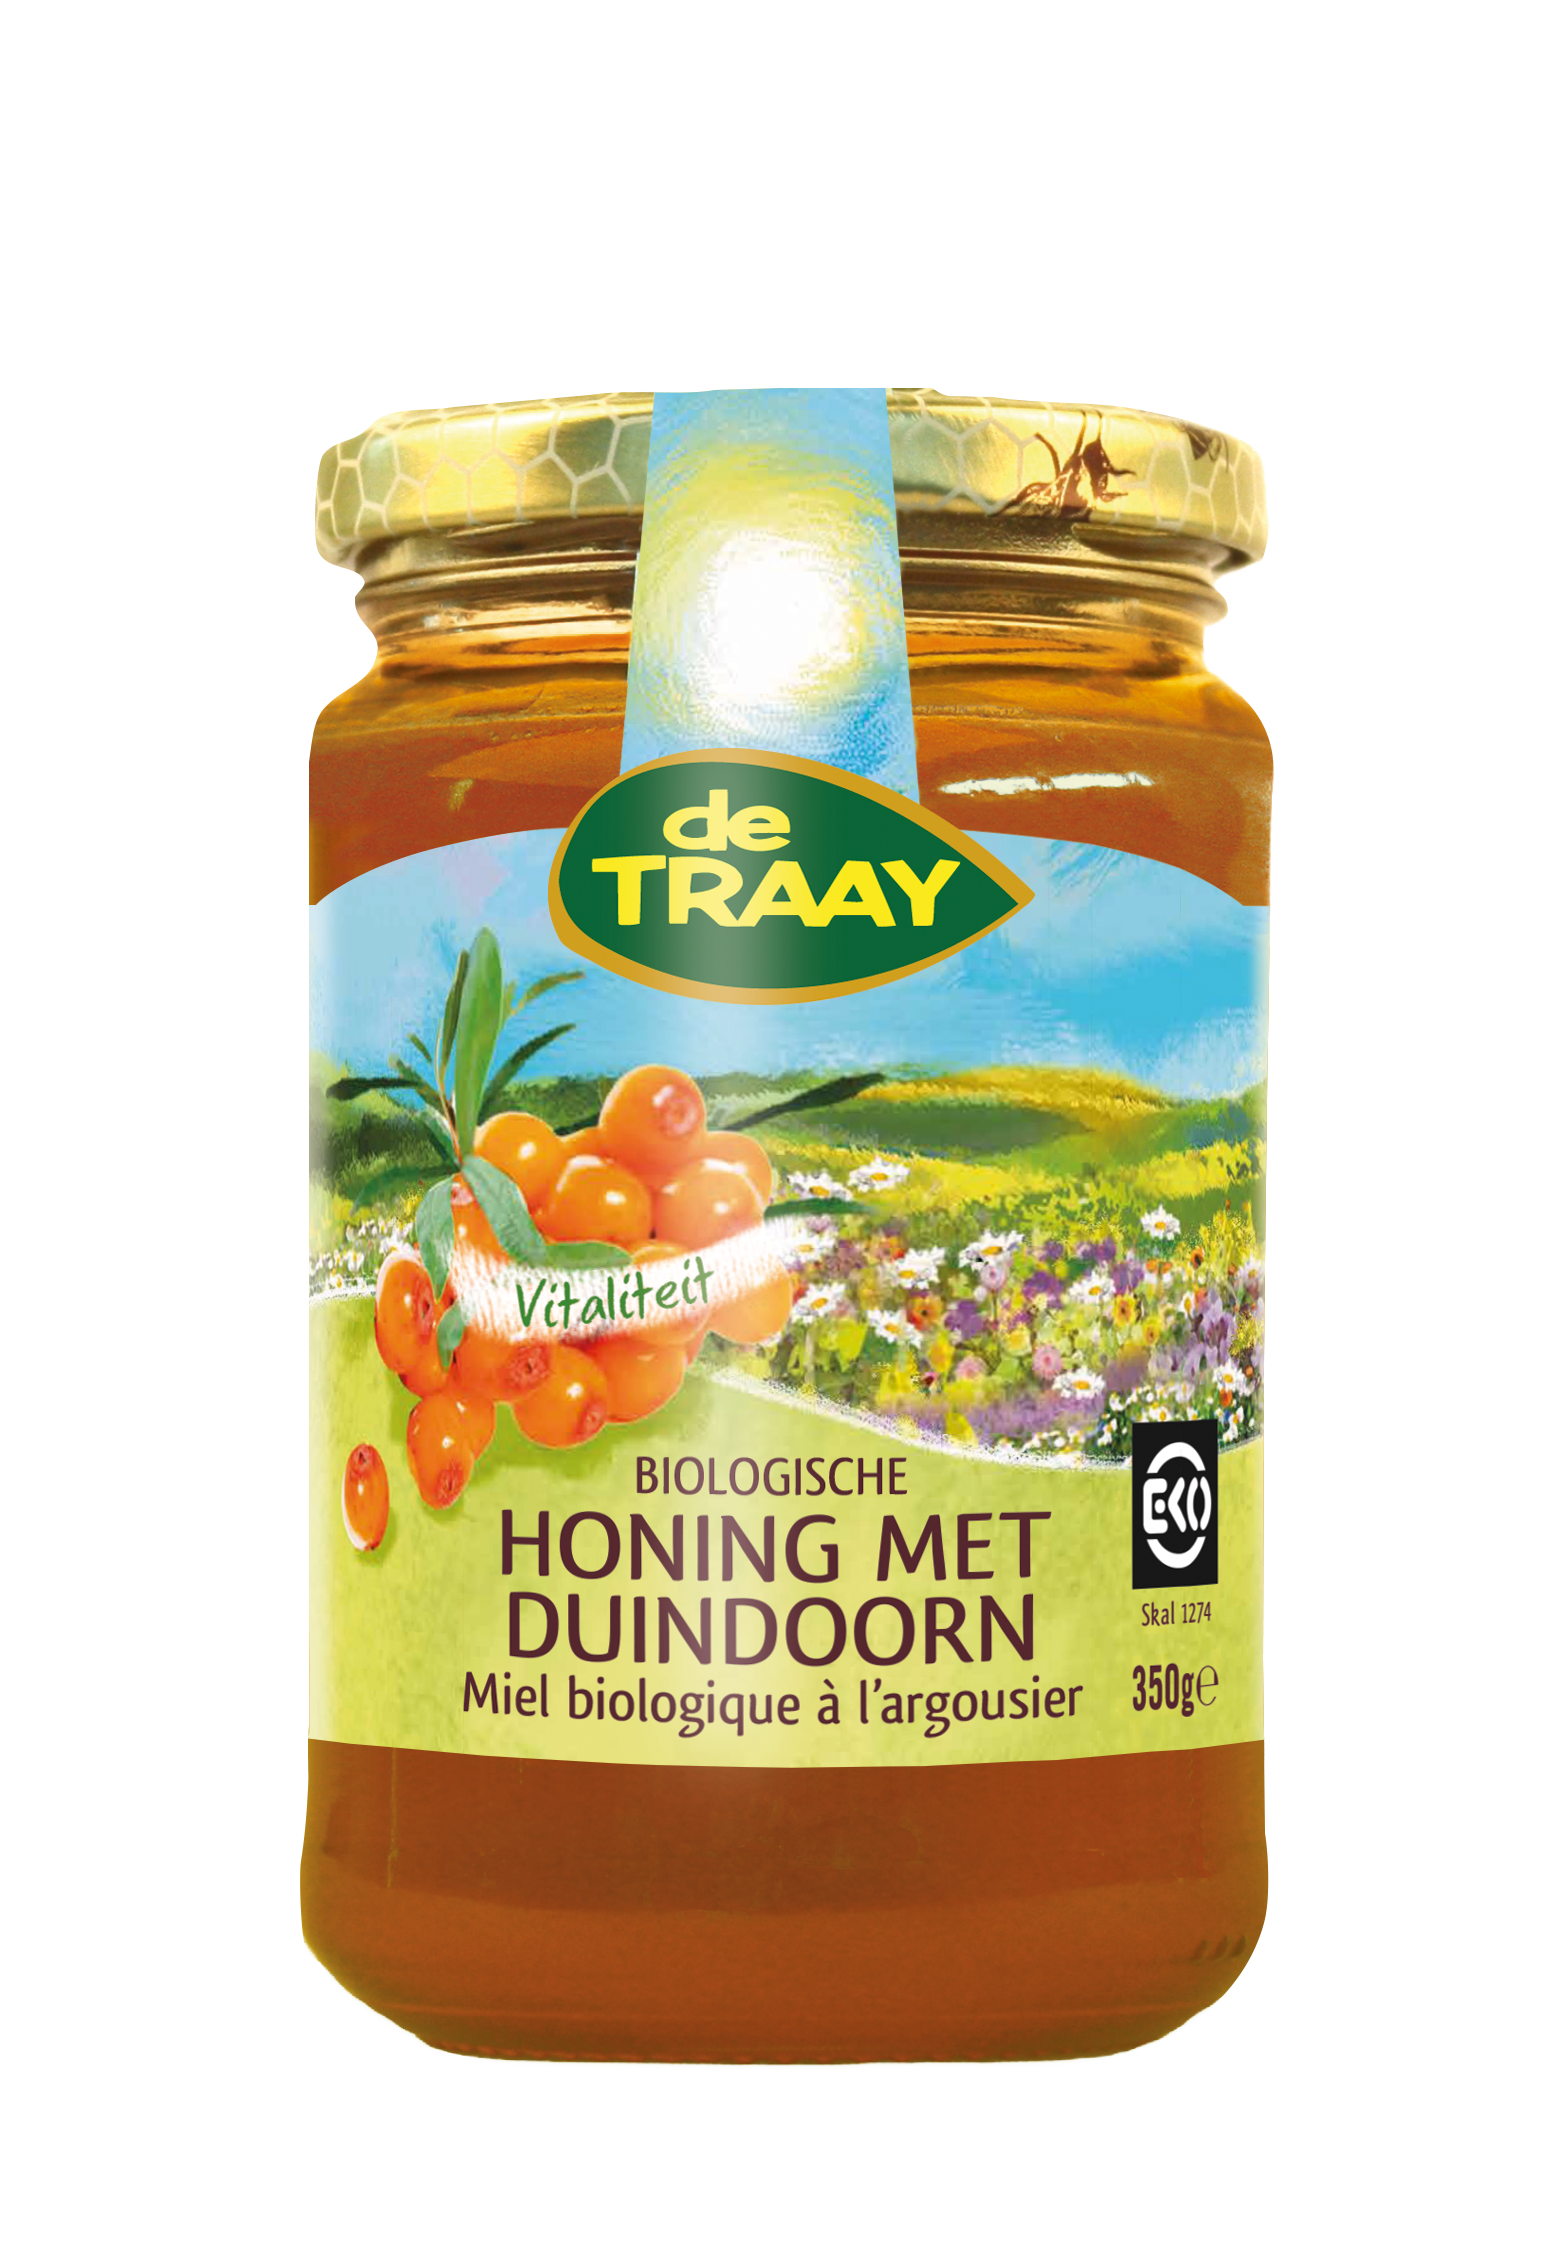 De Traay Honing met duindoorn bio 350g